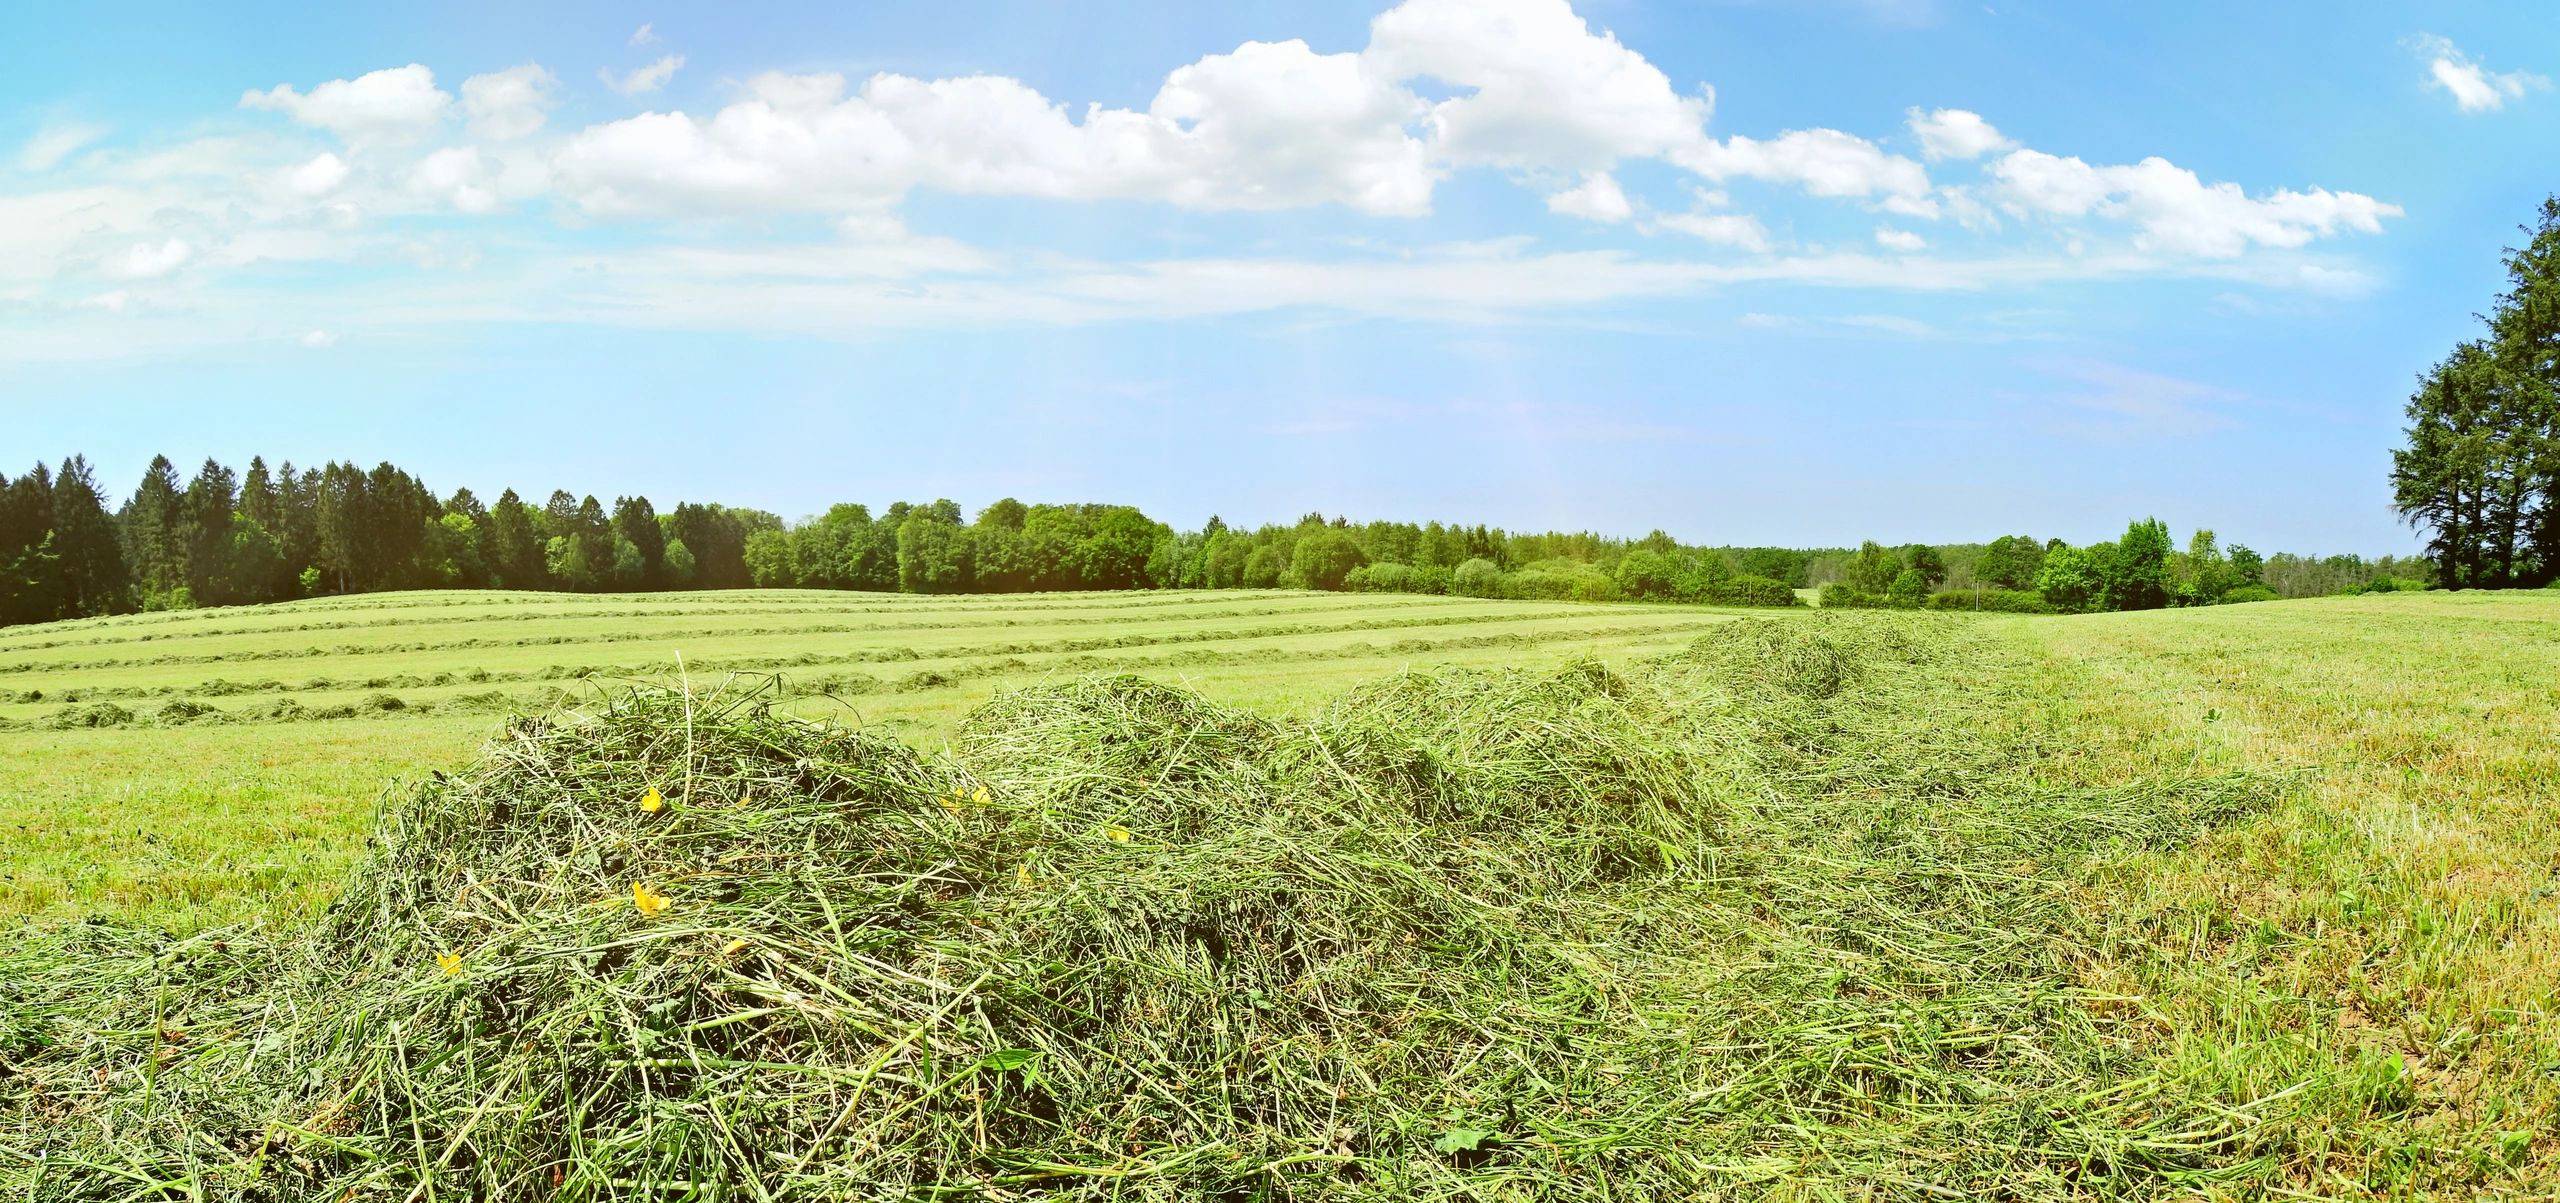 hay, soil and forage testing, kittitas county